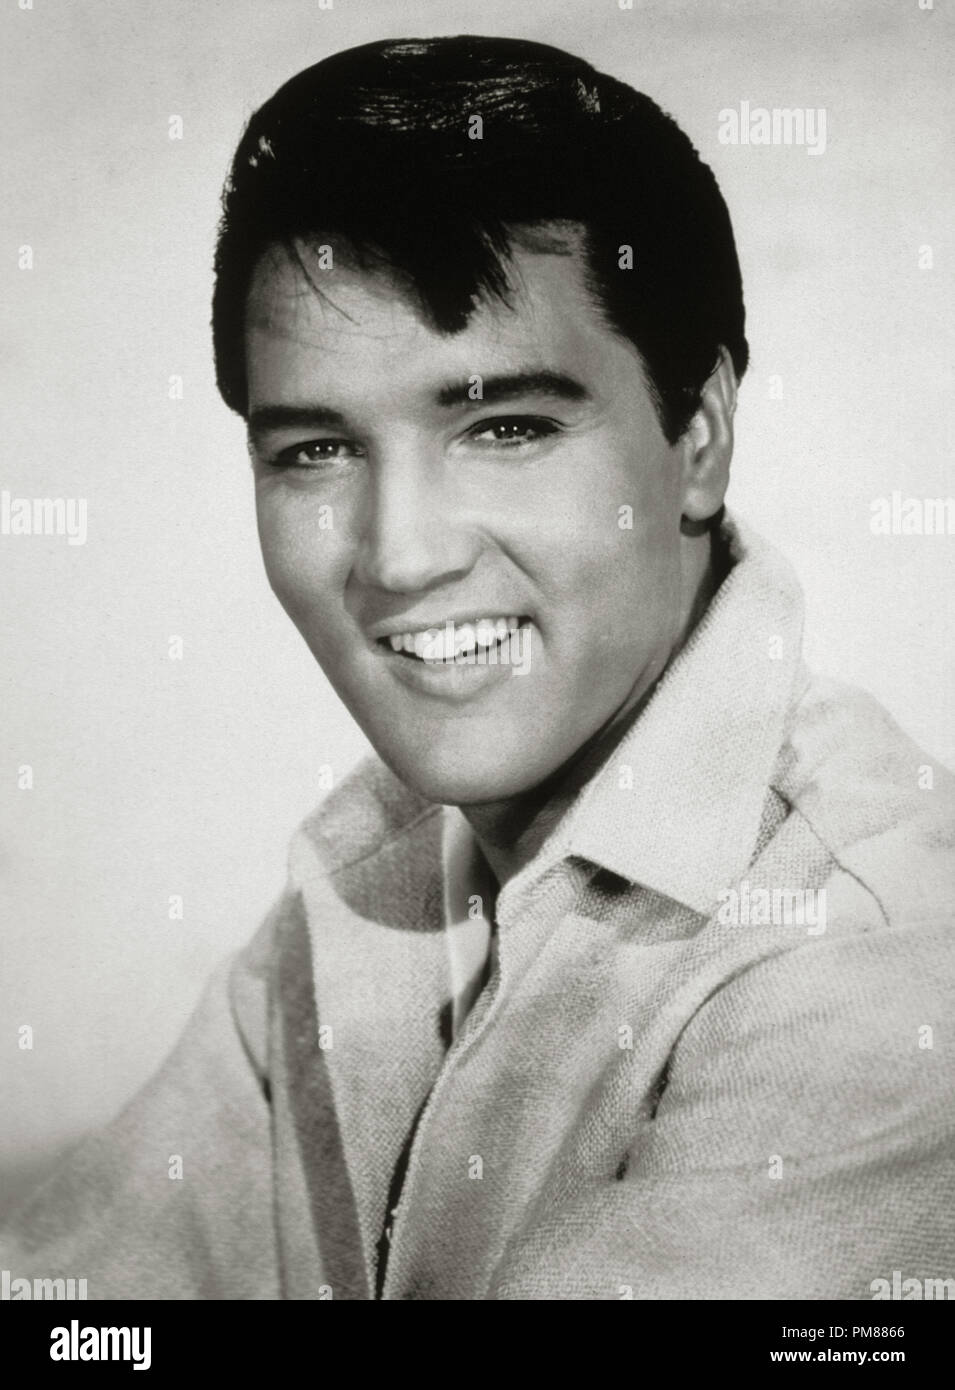 (Archivage classique du cinéma - Rétrospective) Elvis Presley Elvis Presley, vers 1966 référence #  31616 014THA Banque D'Images